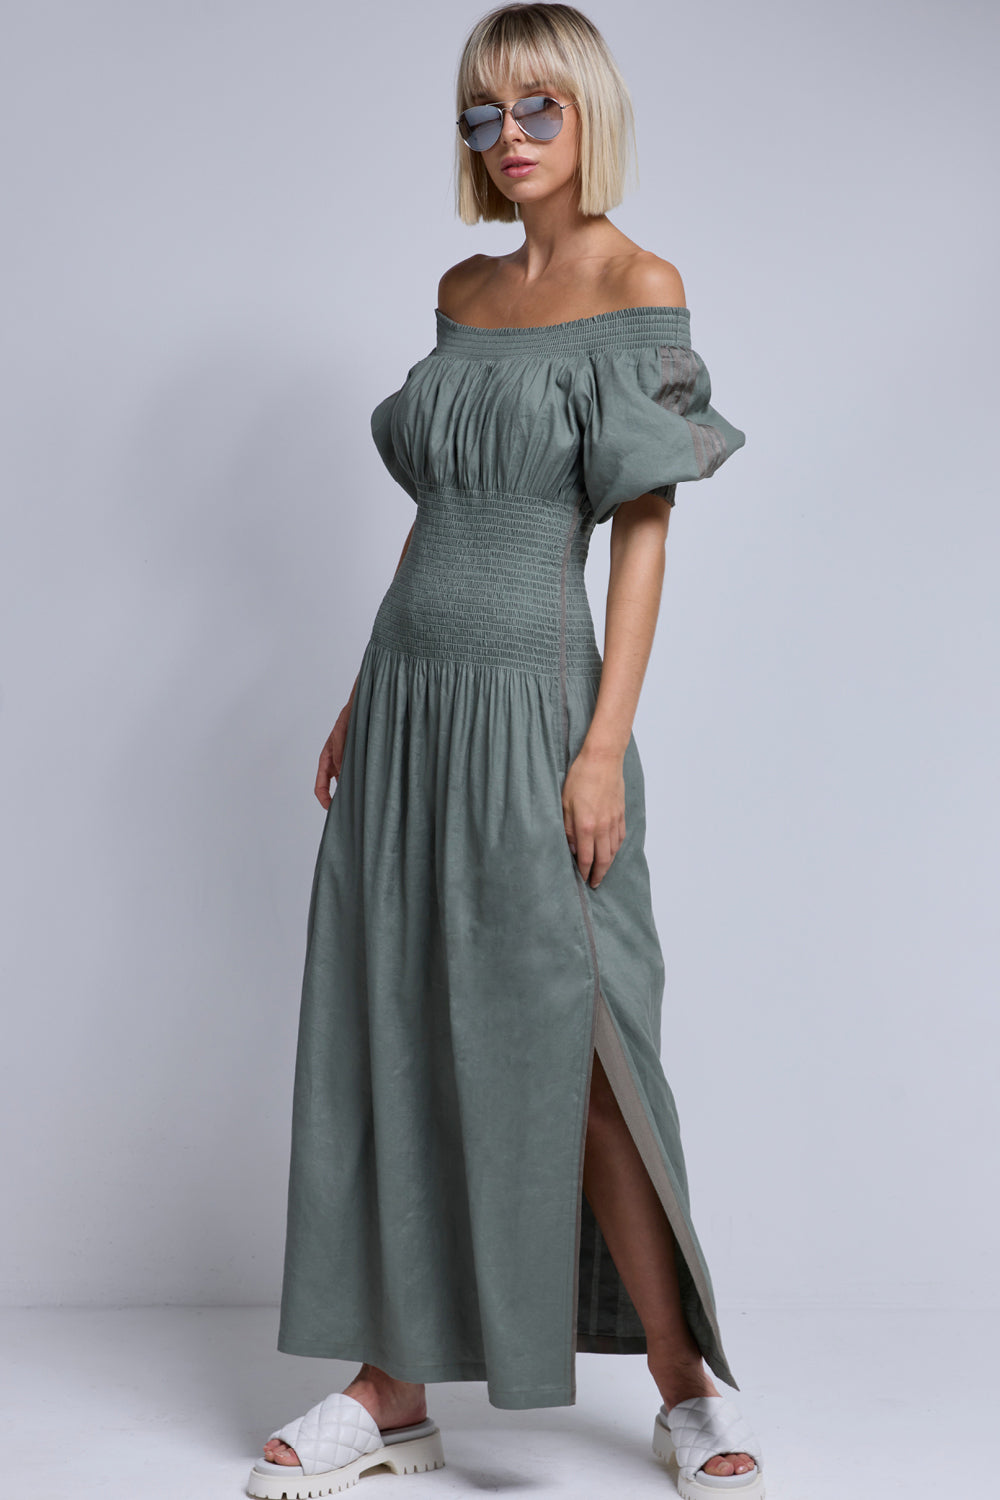 Sydney Dress - Khaki